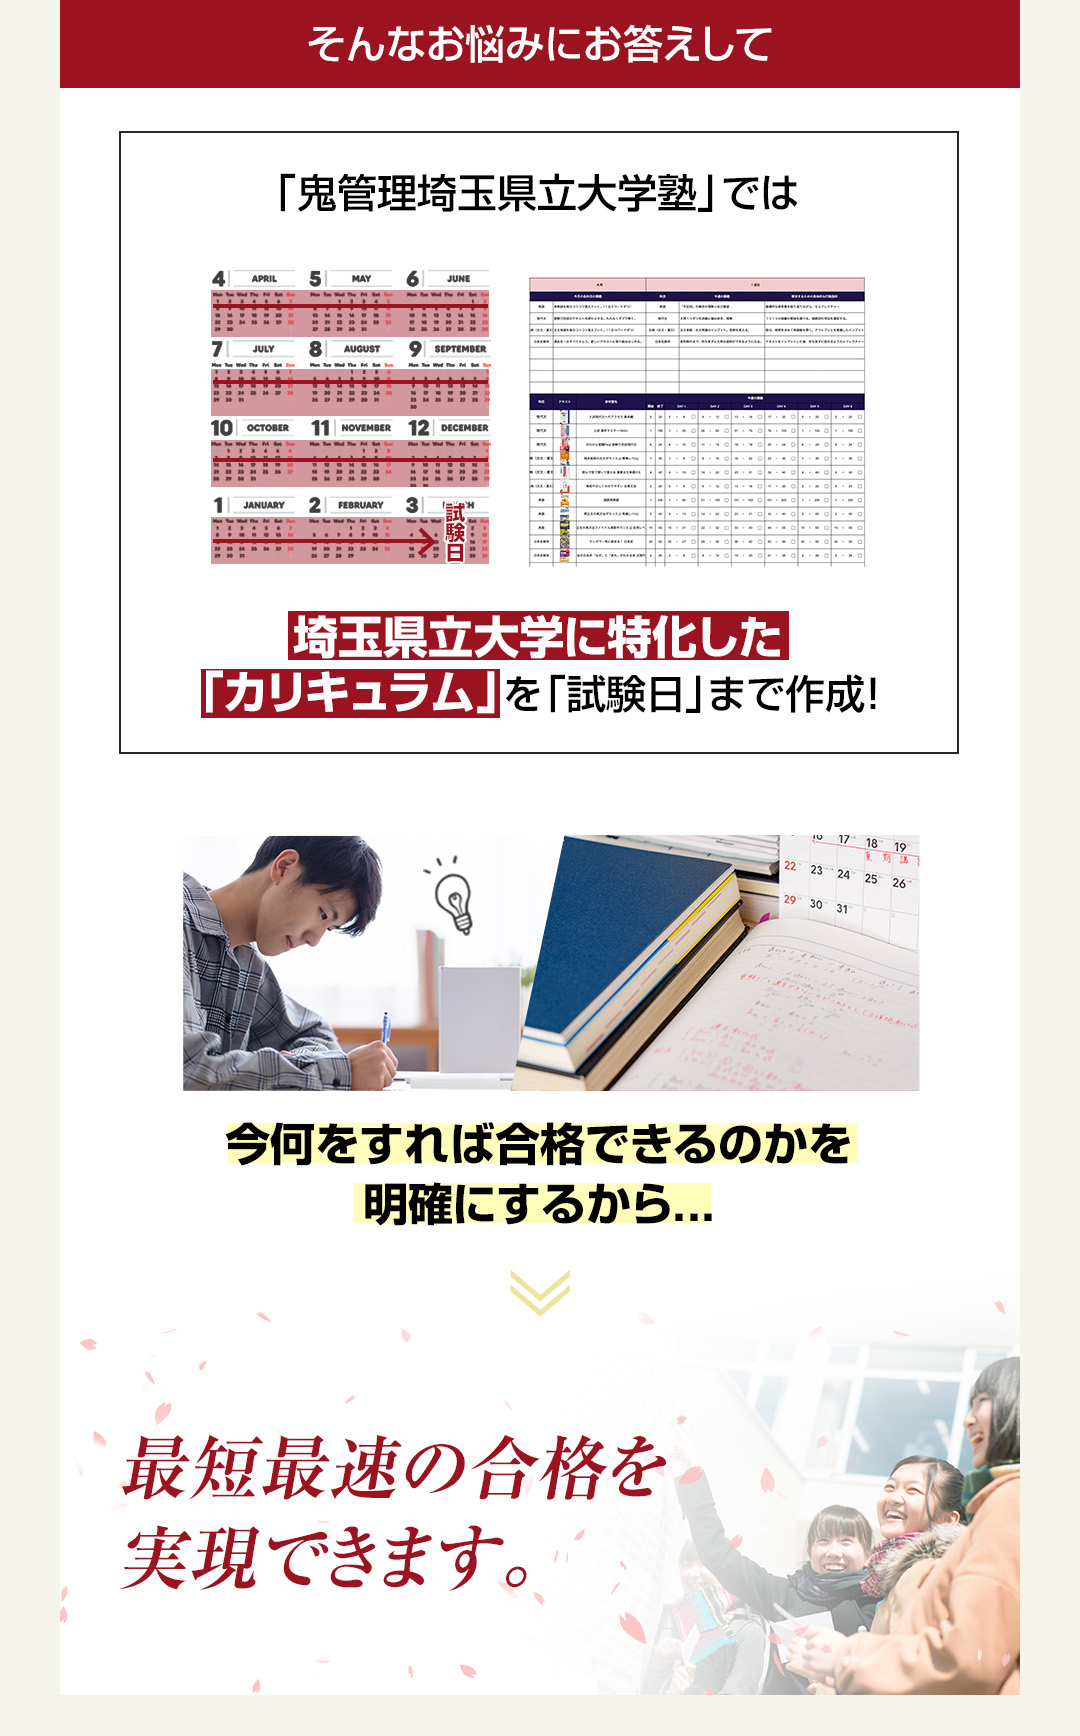 「鬼管理埼玉県立大学塾」では埼玉県立大学に特化した「カリキュラム」を「試験日」まで作成